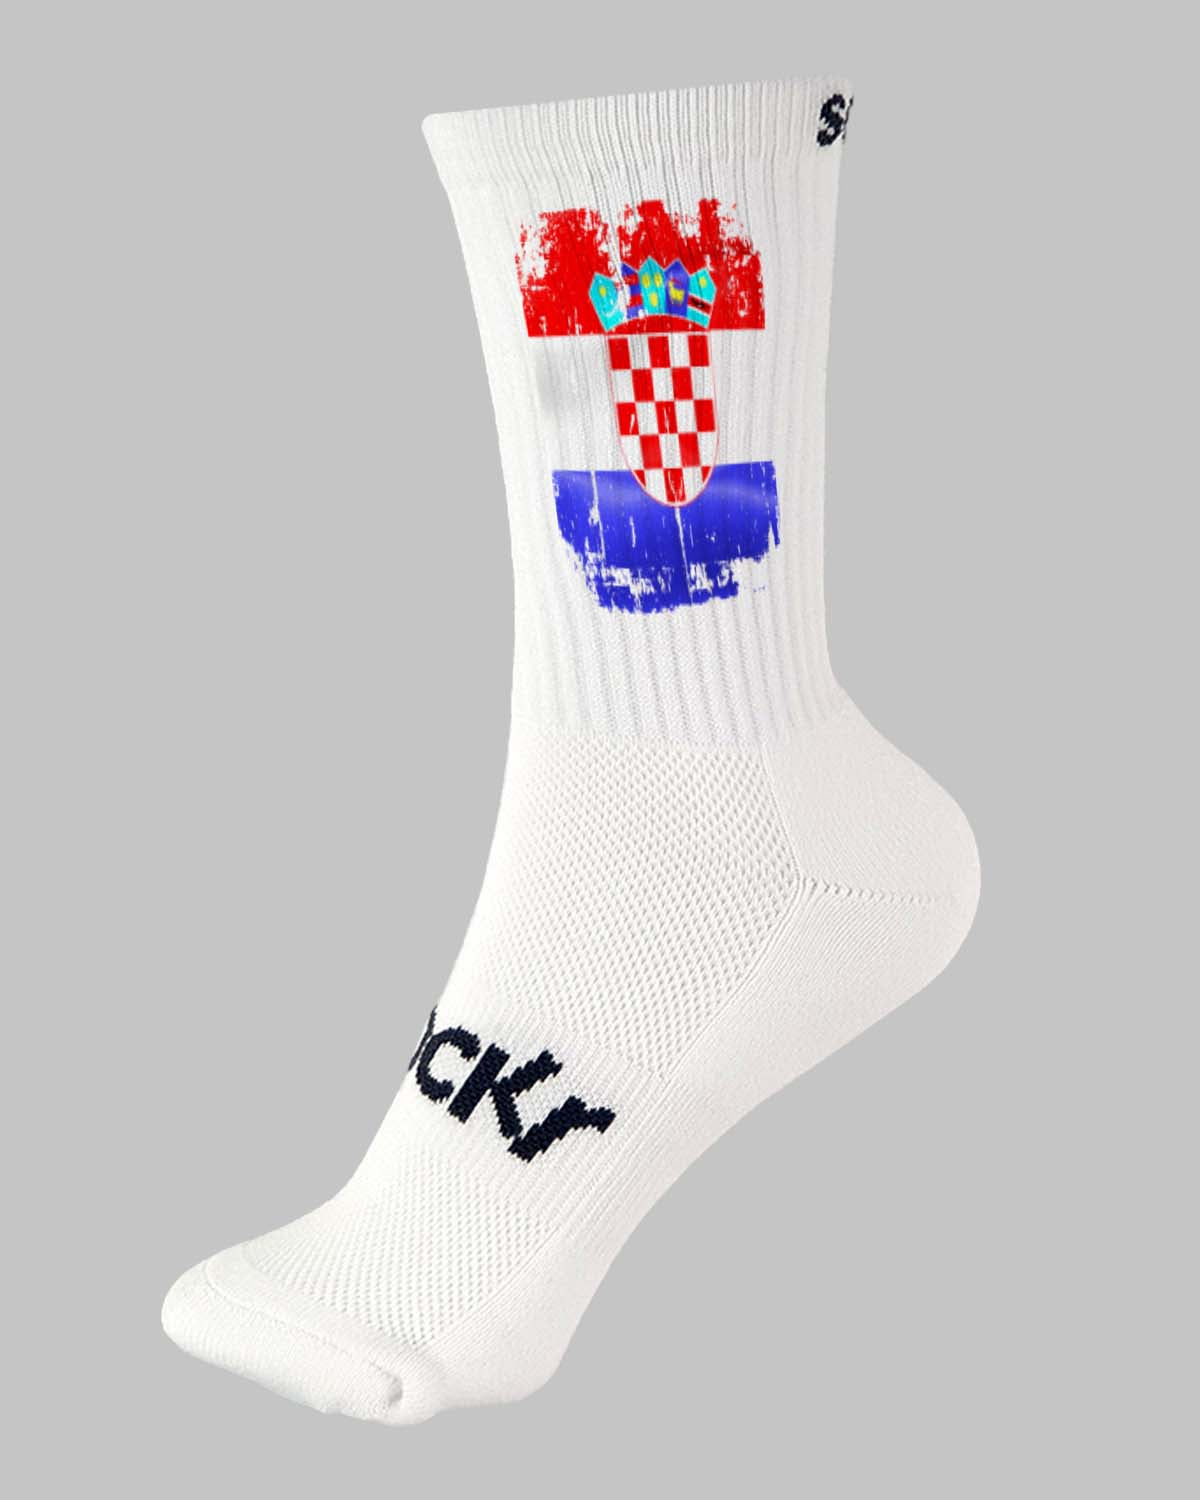 Sportsocke kroatien